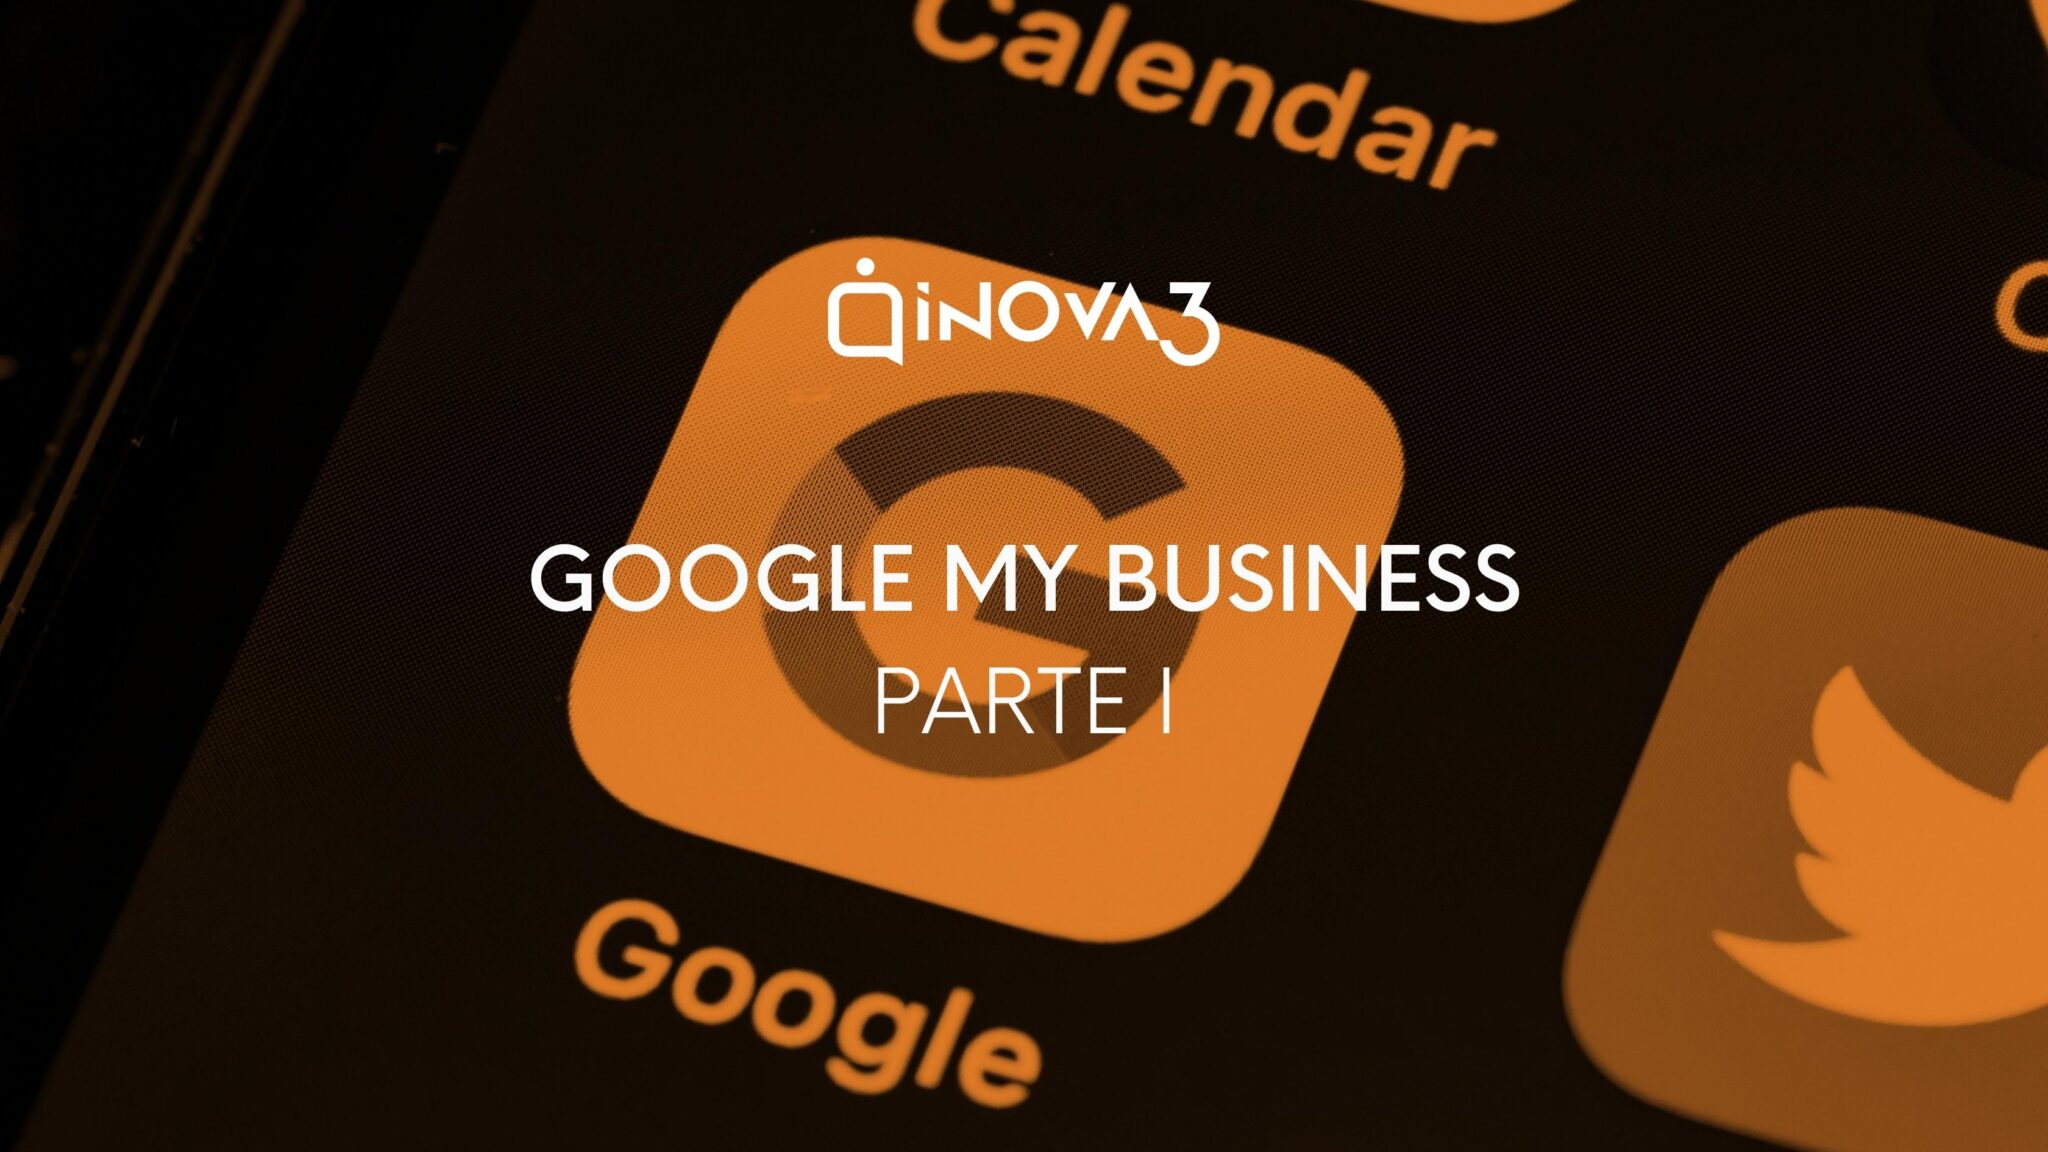 inova3 agencia de marketing digital en Ourense te contamos qué es Google My Business